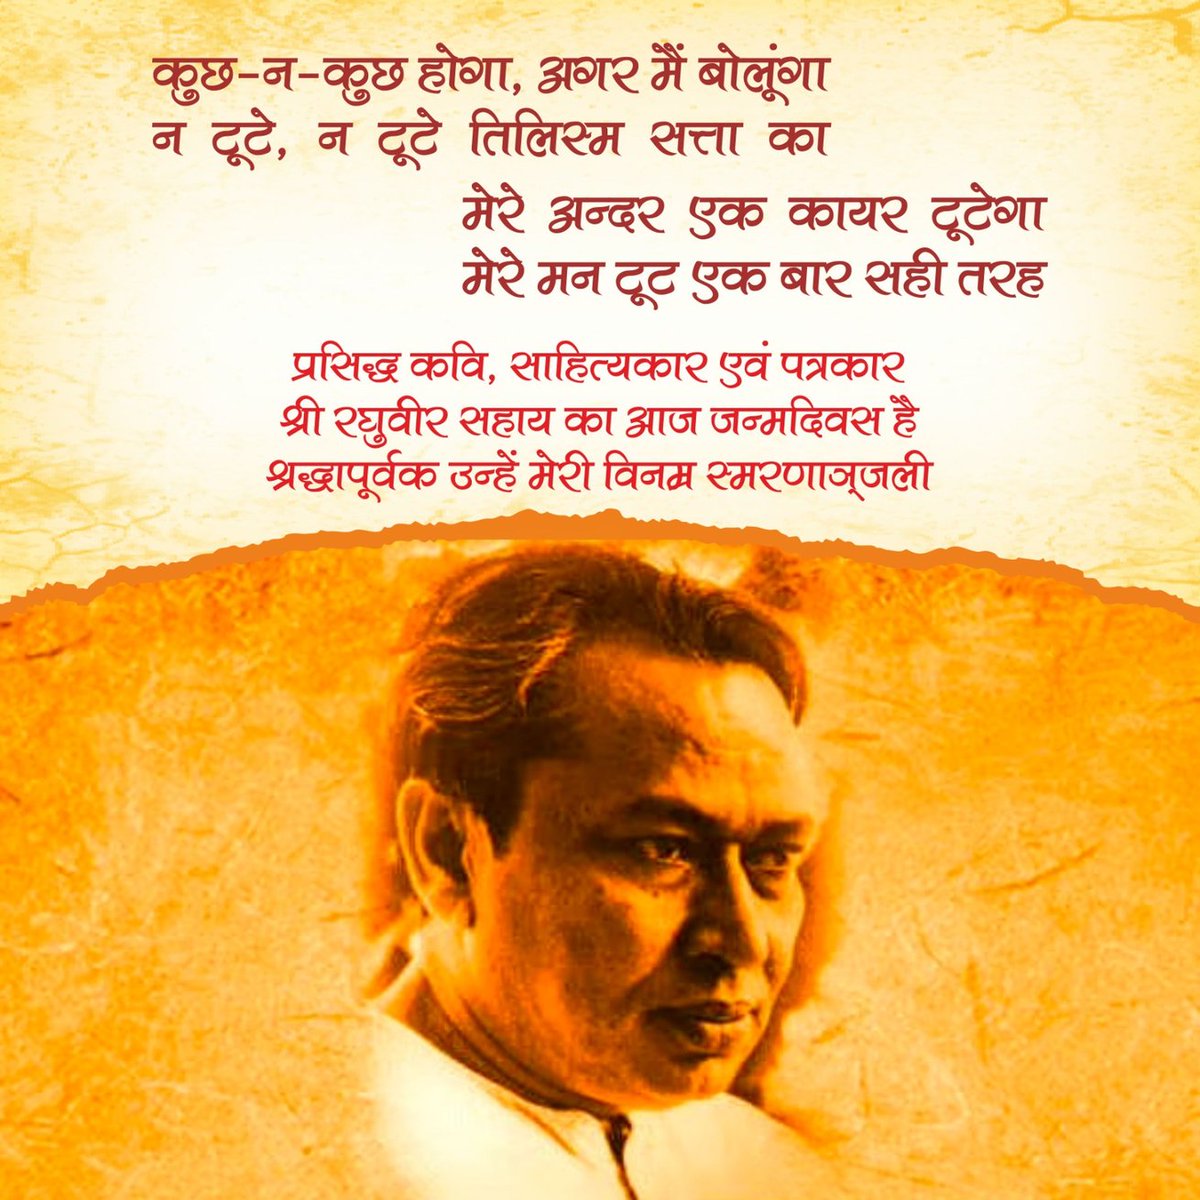 महान लेखक, आधुनिक साहित्यकार व सुप्रसिद्ध कवि रघुवीर सहाय जी की जयंती पर उन्हें शत-शत नमन। #RaghuveerSahay